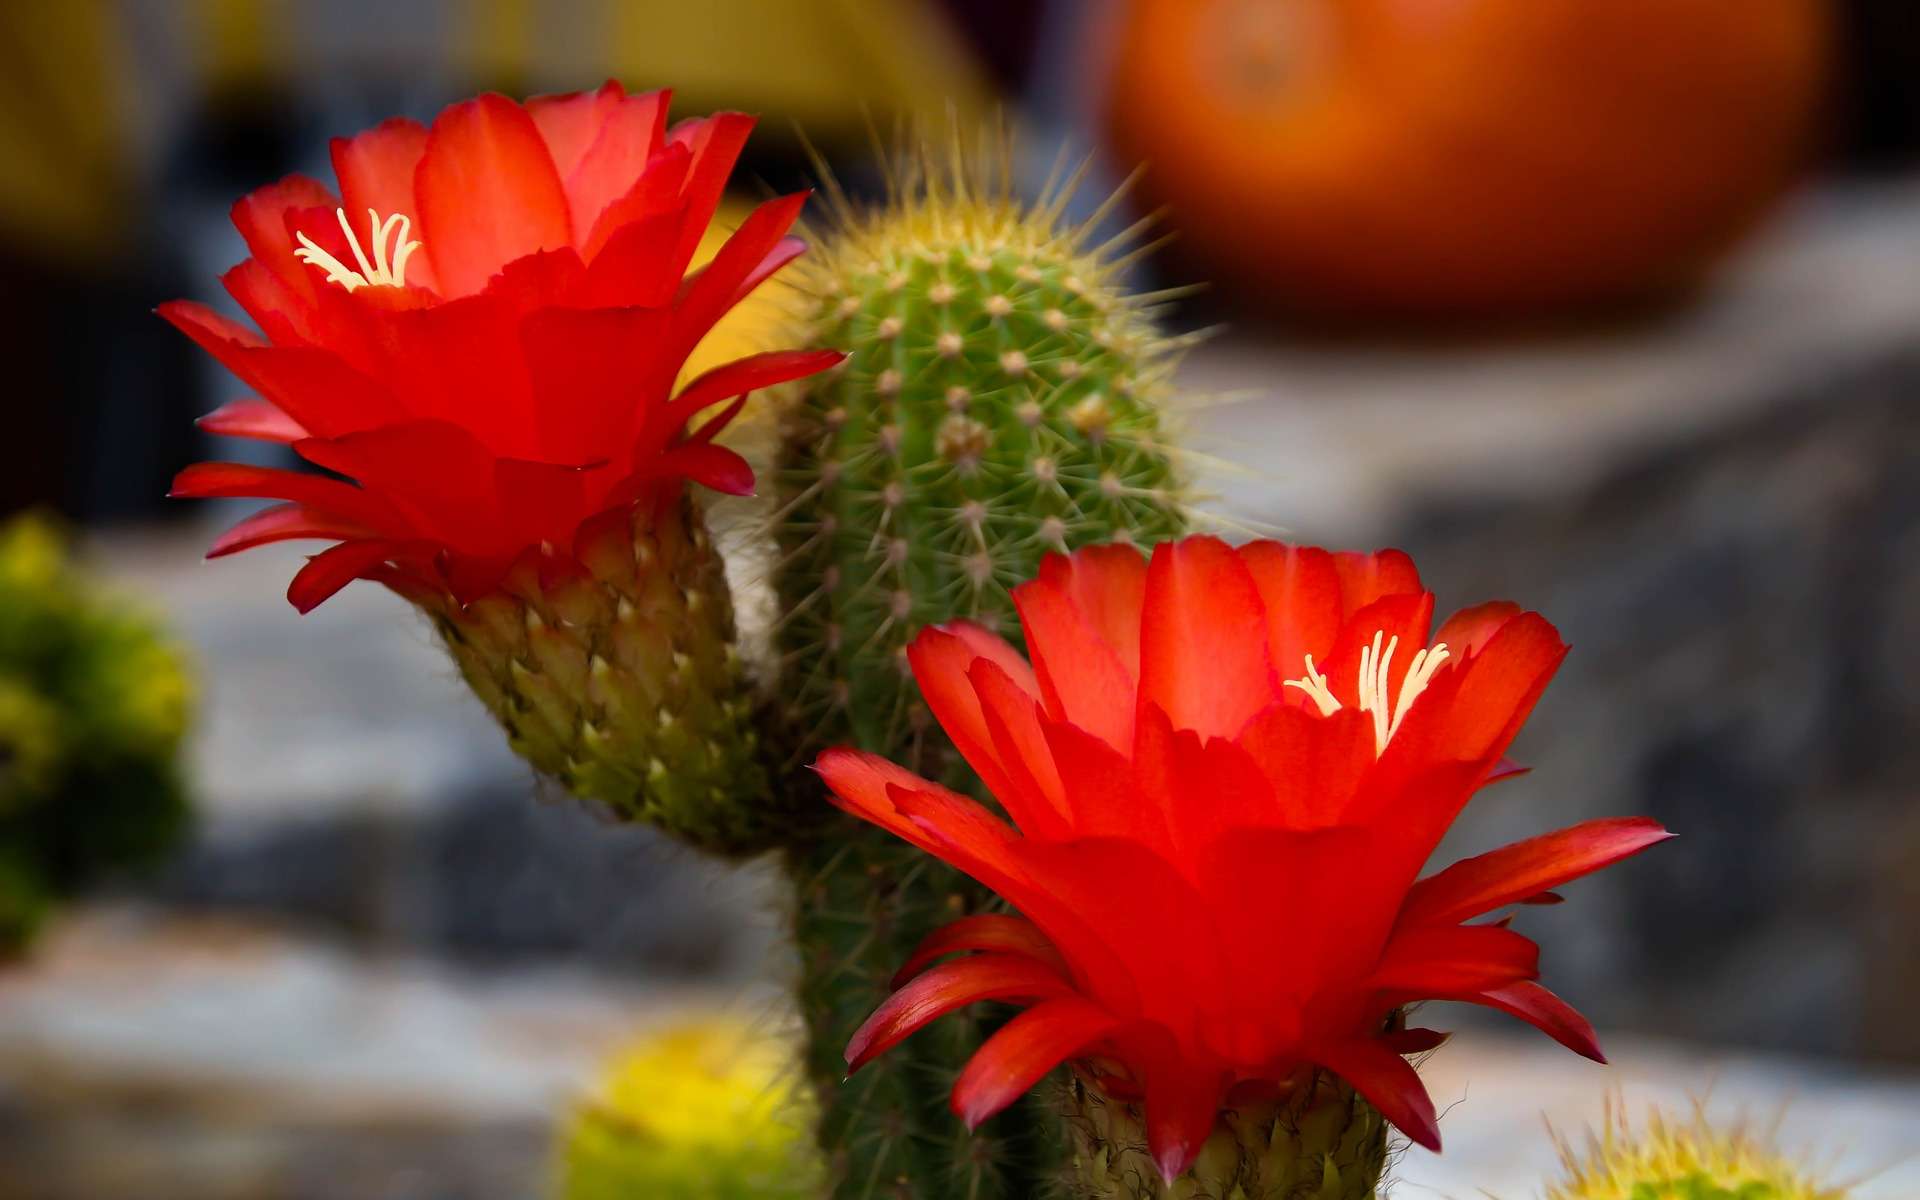 Le froid fait entrer les cactus en repos végétatif, une phase indispensable pour leur permettre de fleurir au printemps. © GermansLat, Pixabay